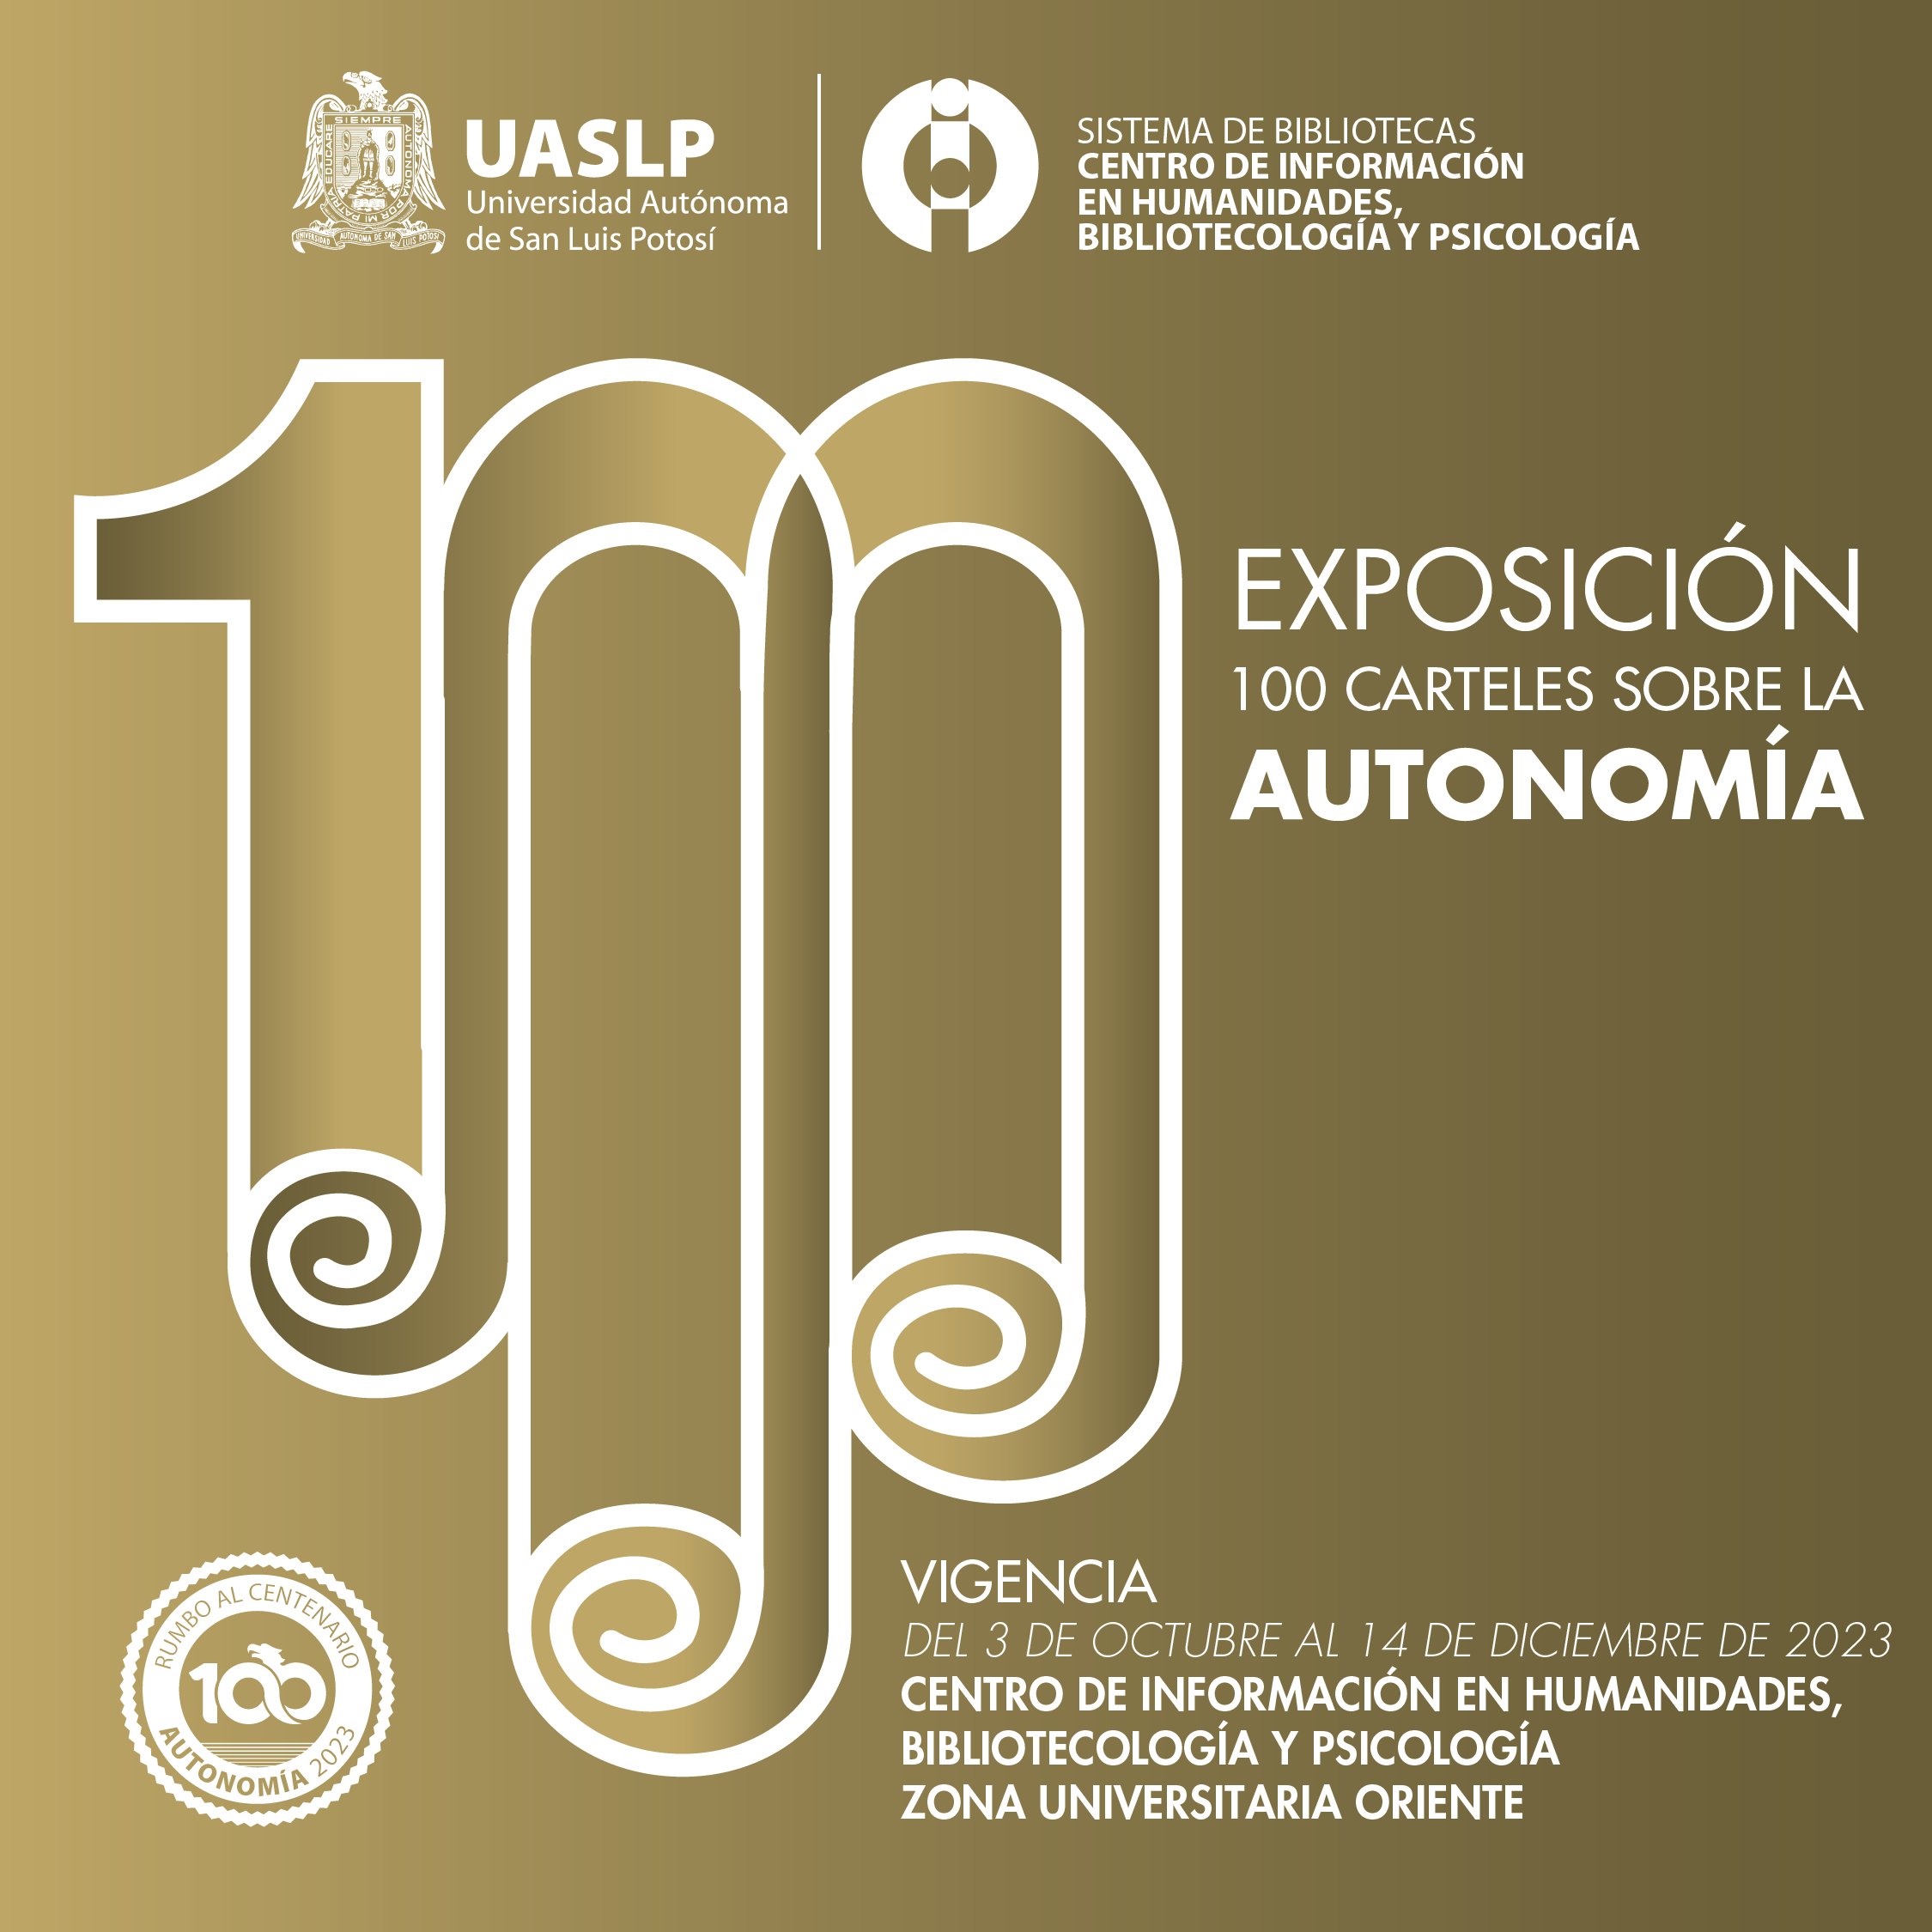 Universidad Autonoma de San Luis Potosi